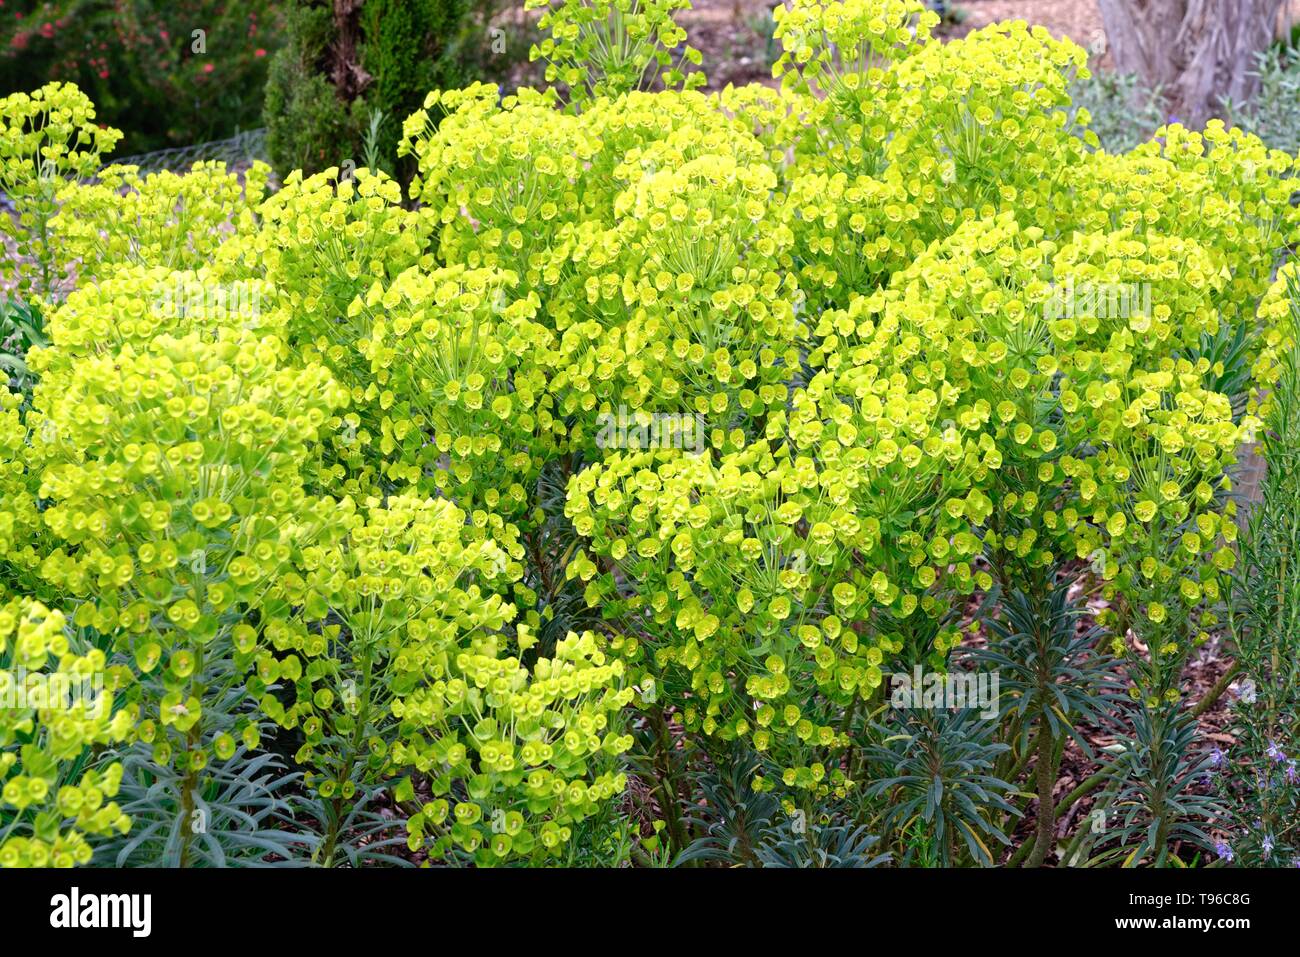 Flowers of the Euphorbia 'Characias' sub species 'Wulfenii' Stock Photo